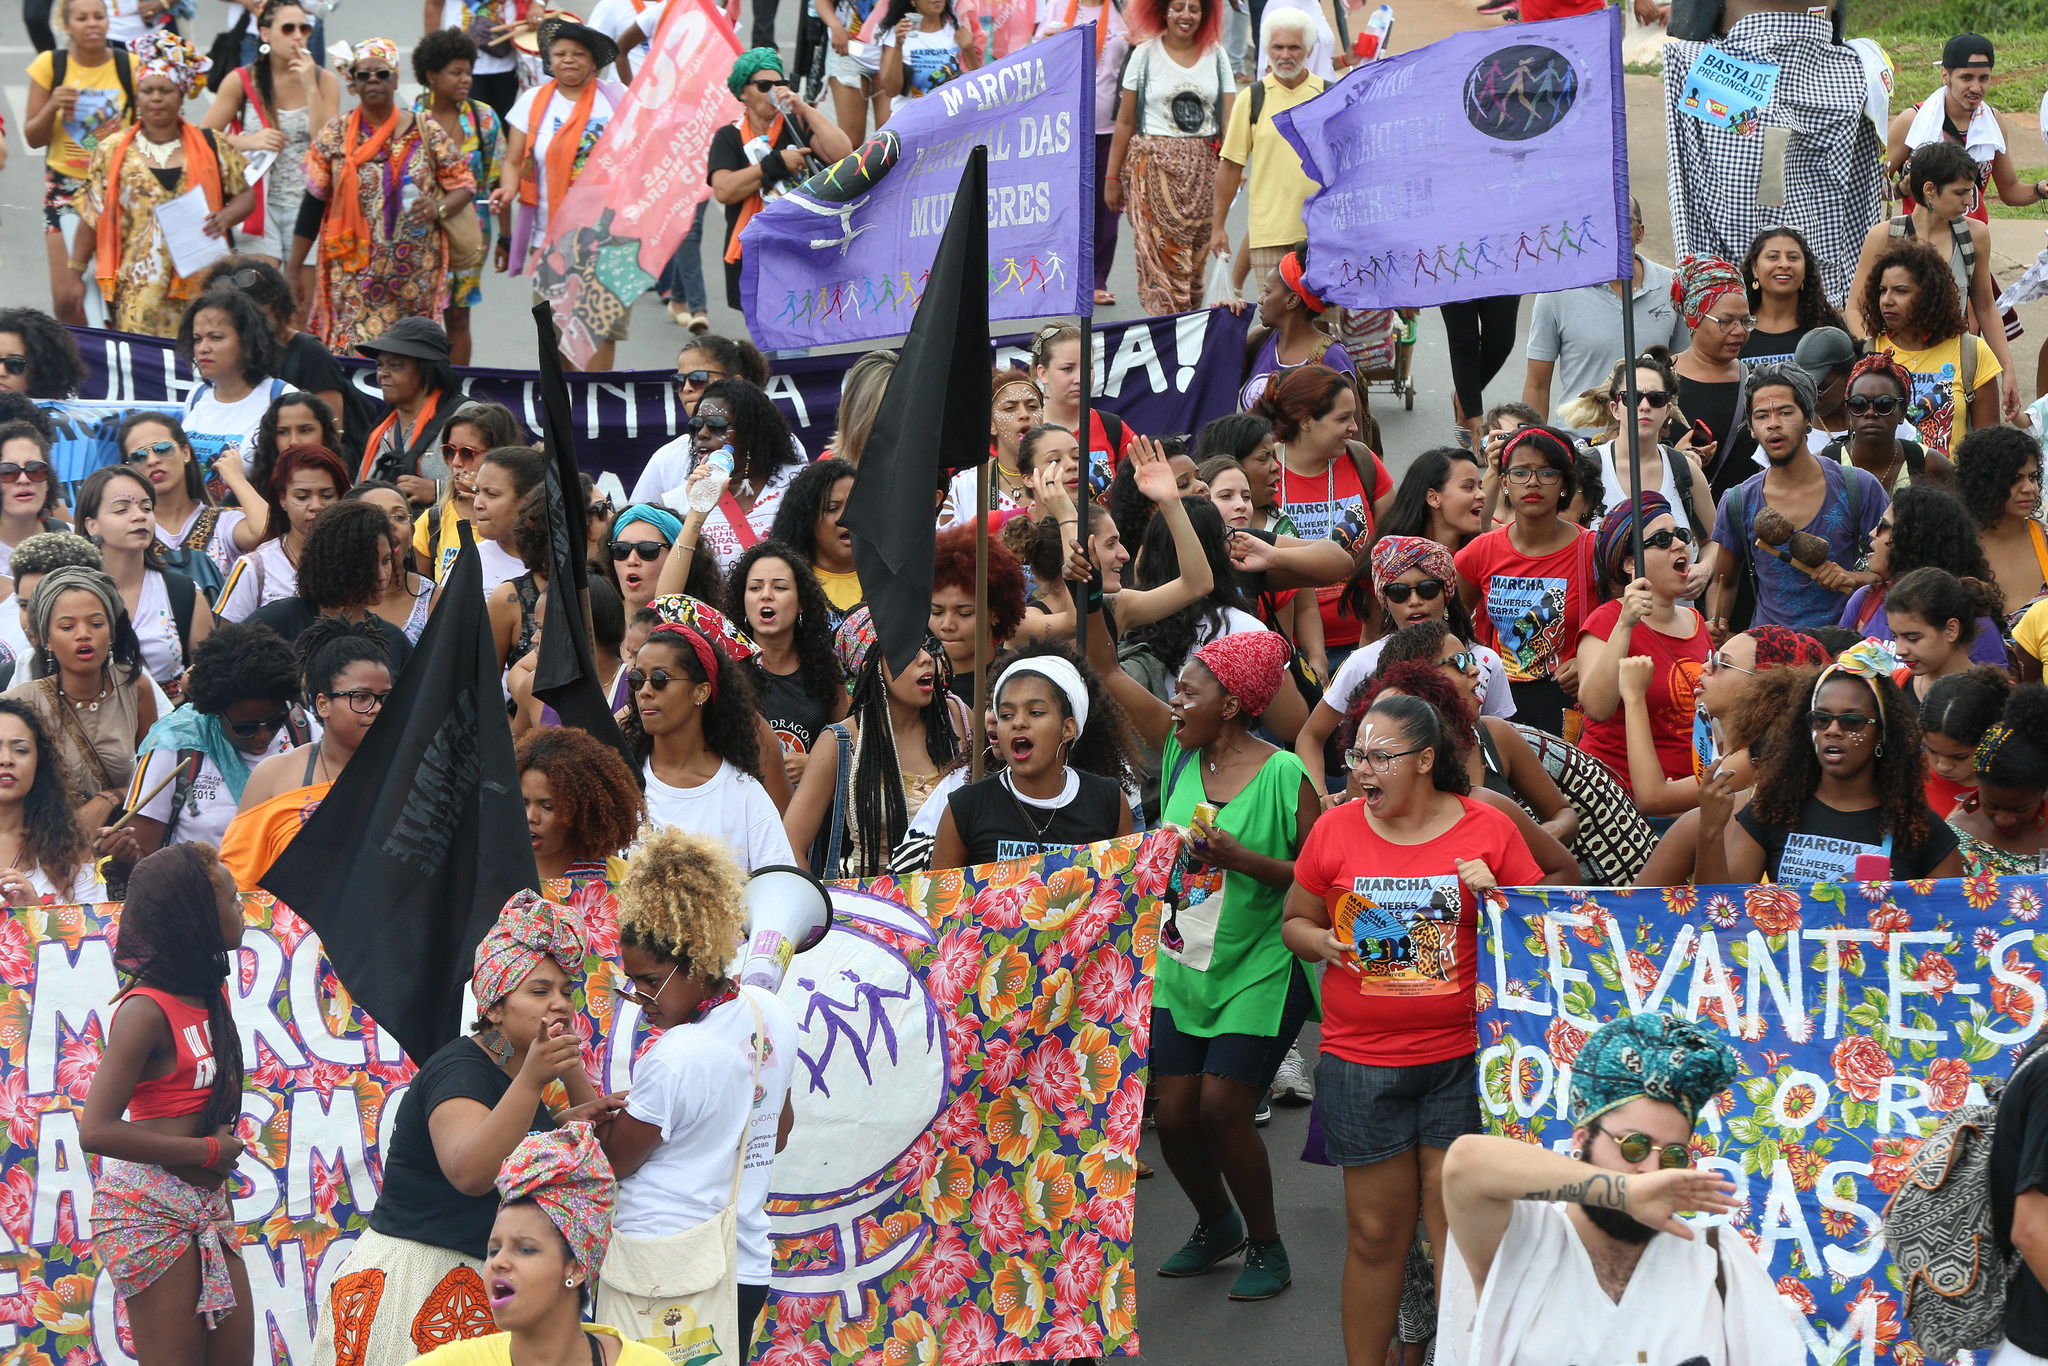 Dia da Mulher: 8 de março terá atos em todo o Brasil. Confira a agenda